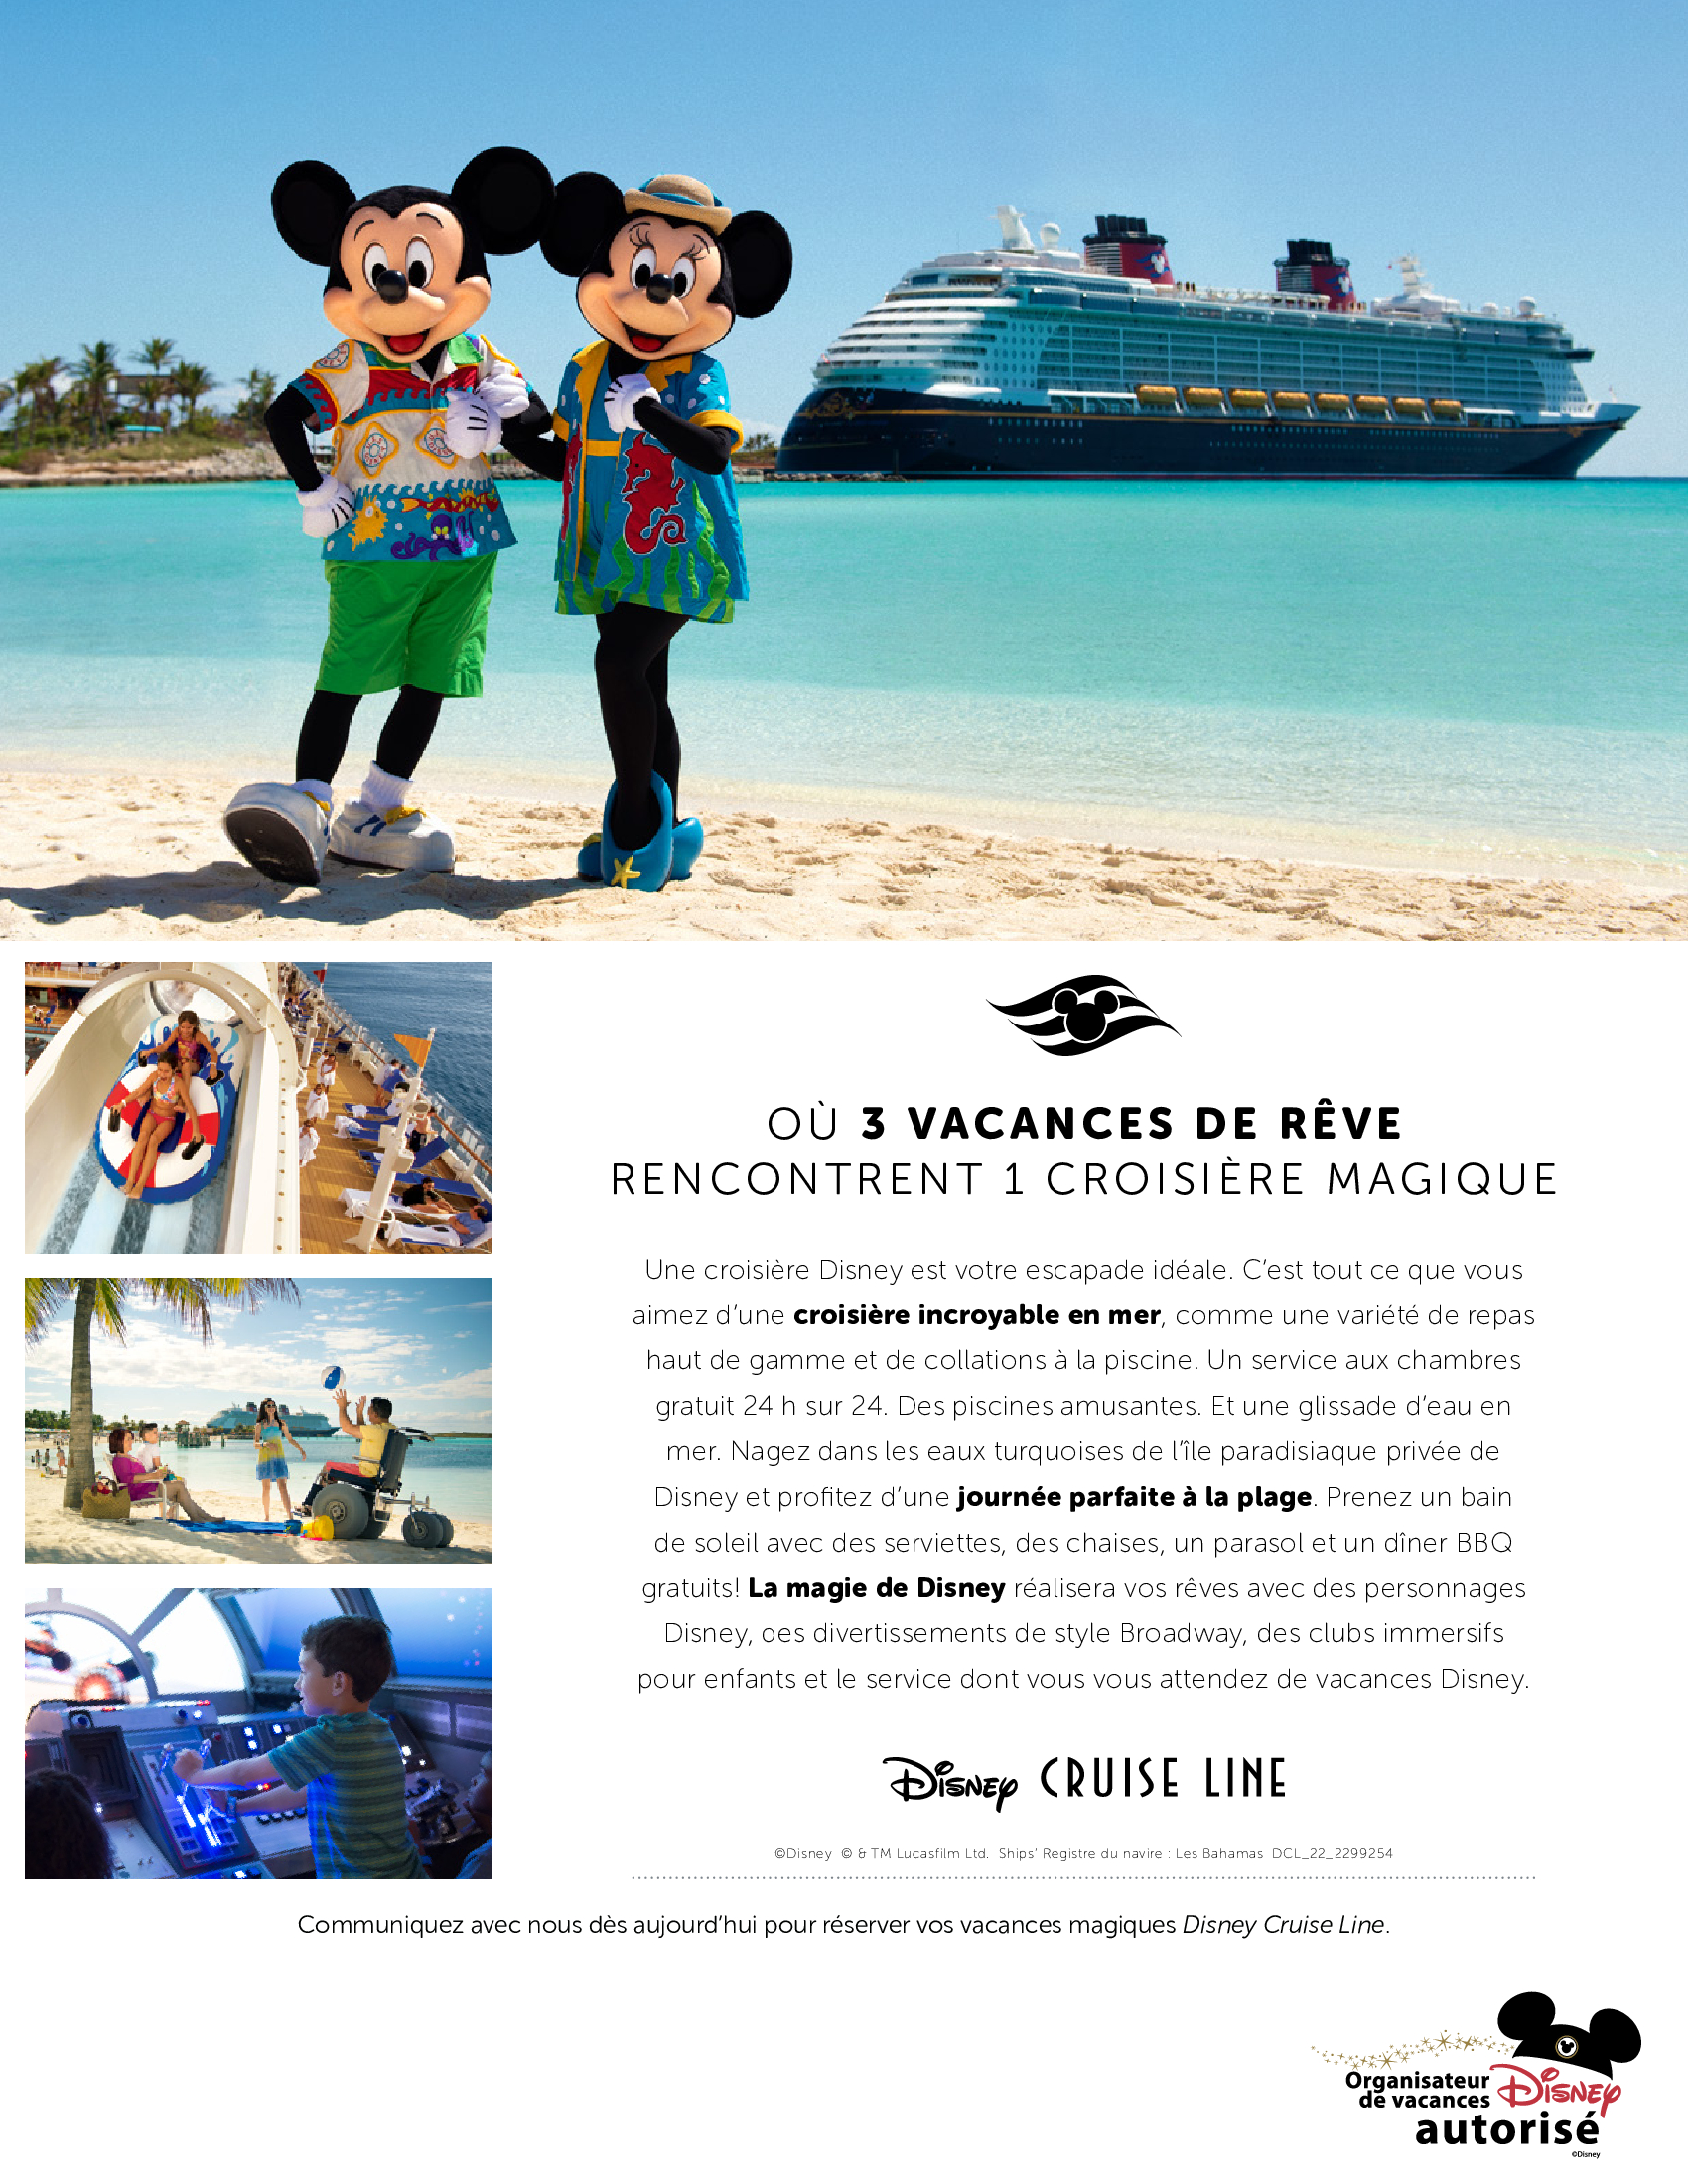 Disney Cruise Line - Où 3 vacances de rêves rencontrent une croisière magique